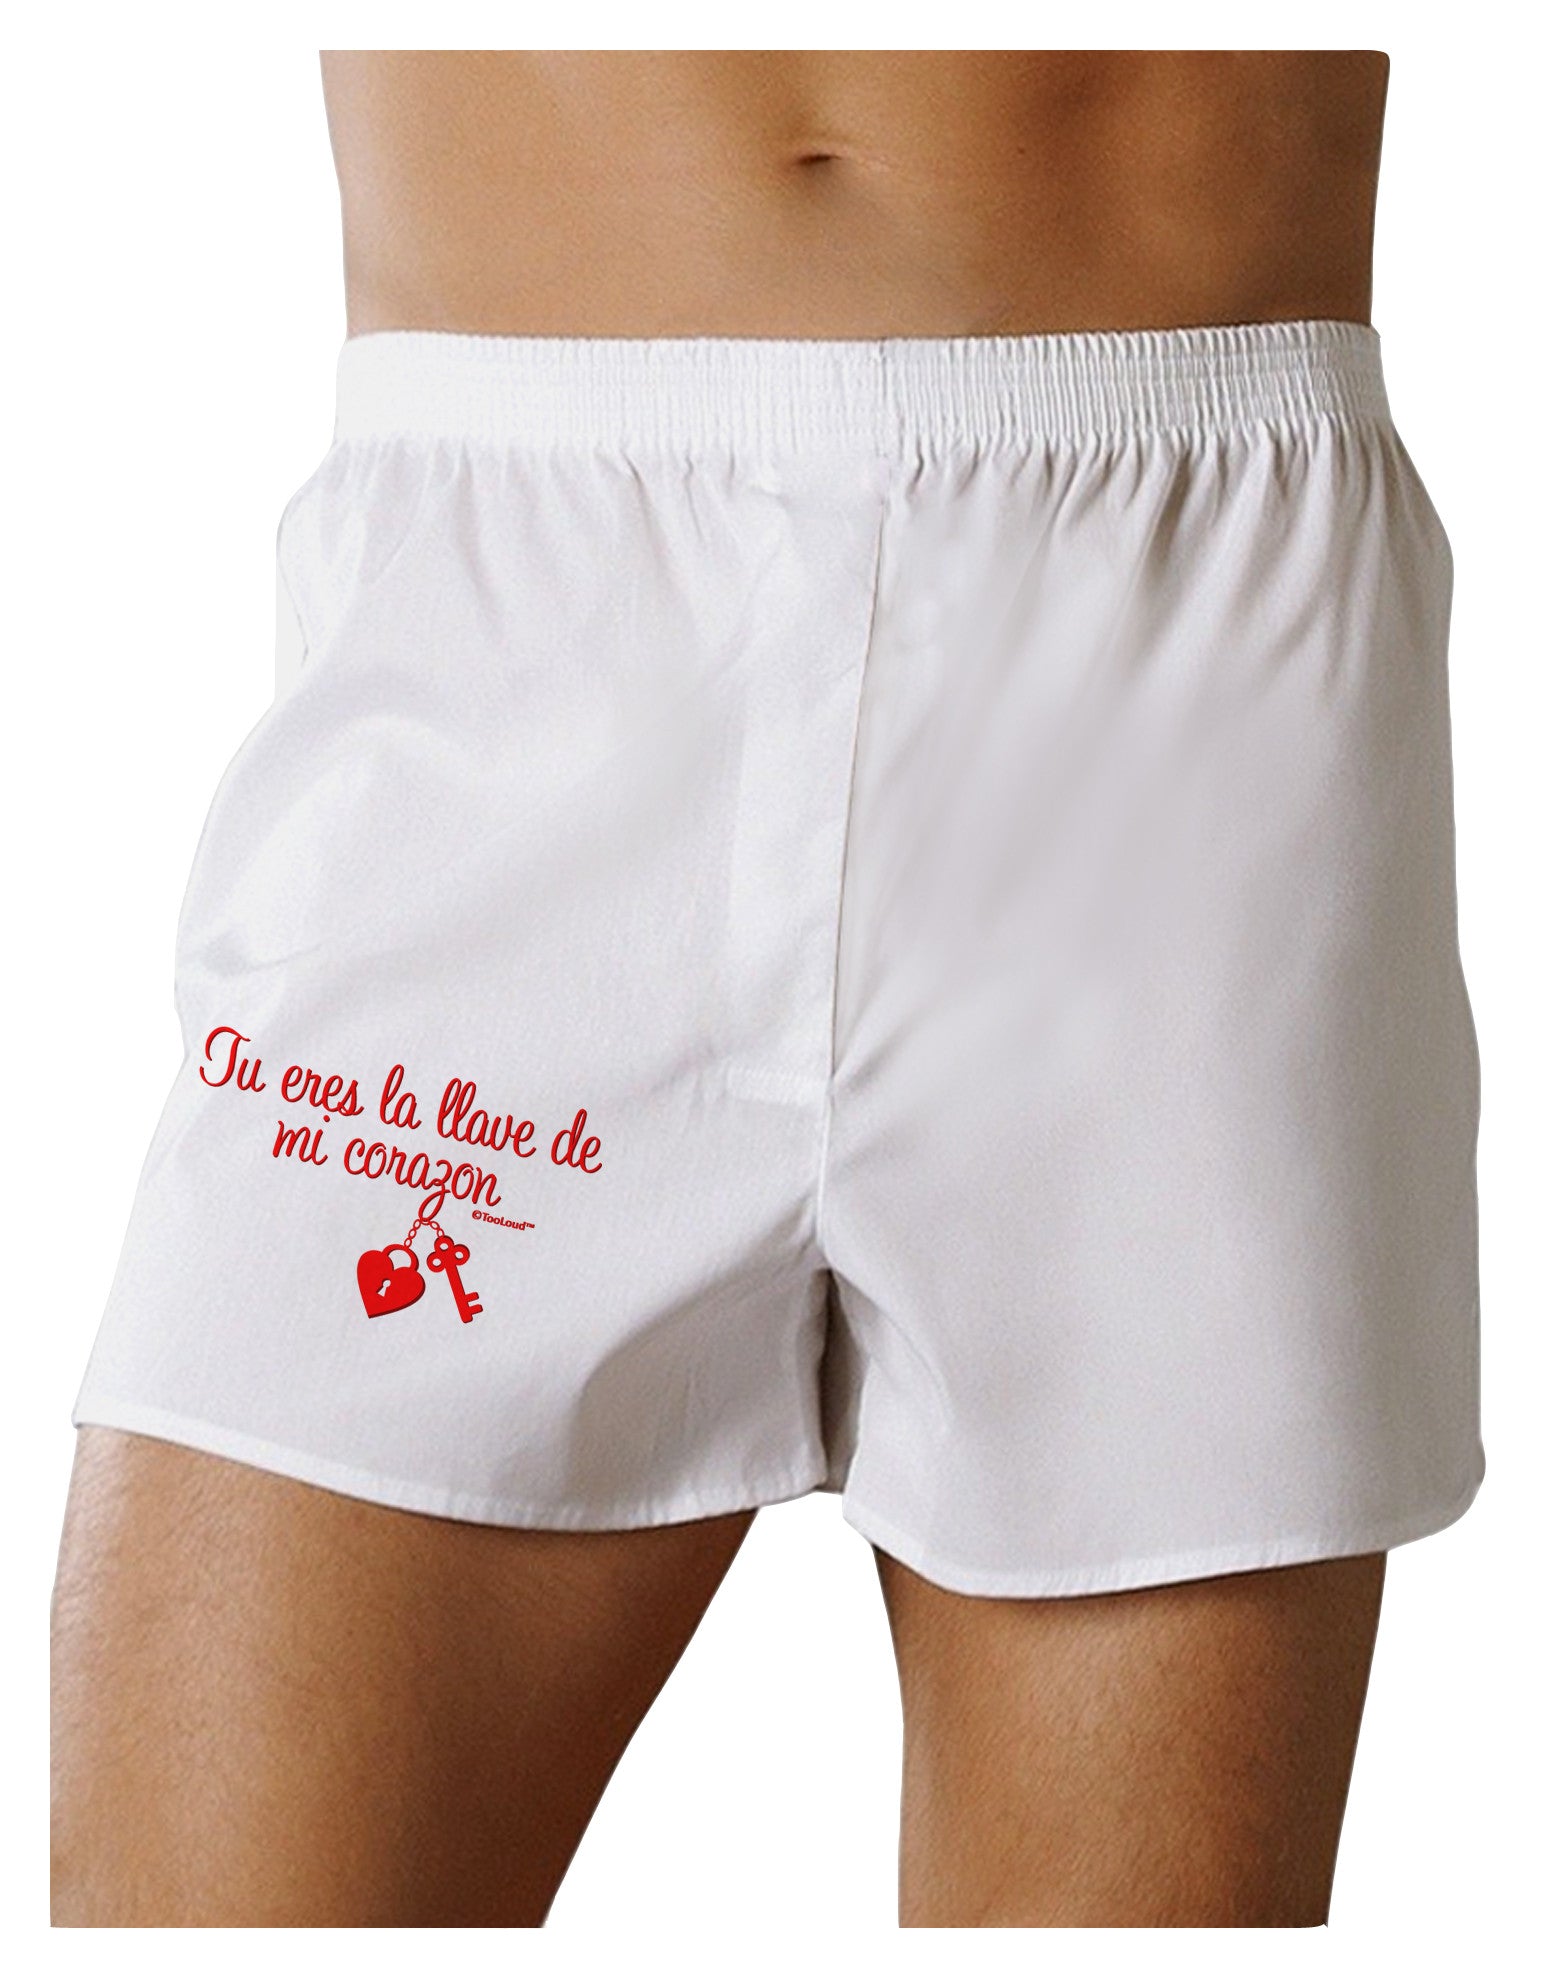 Valentines Day Mens Sexy Printed Boxer Briefs - Valentine's Day Design -  Davson Sales